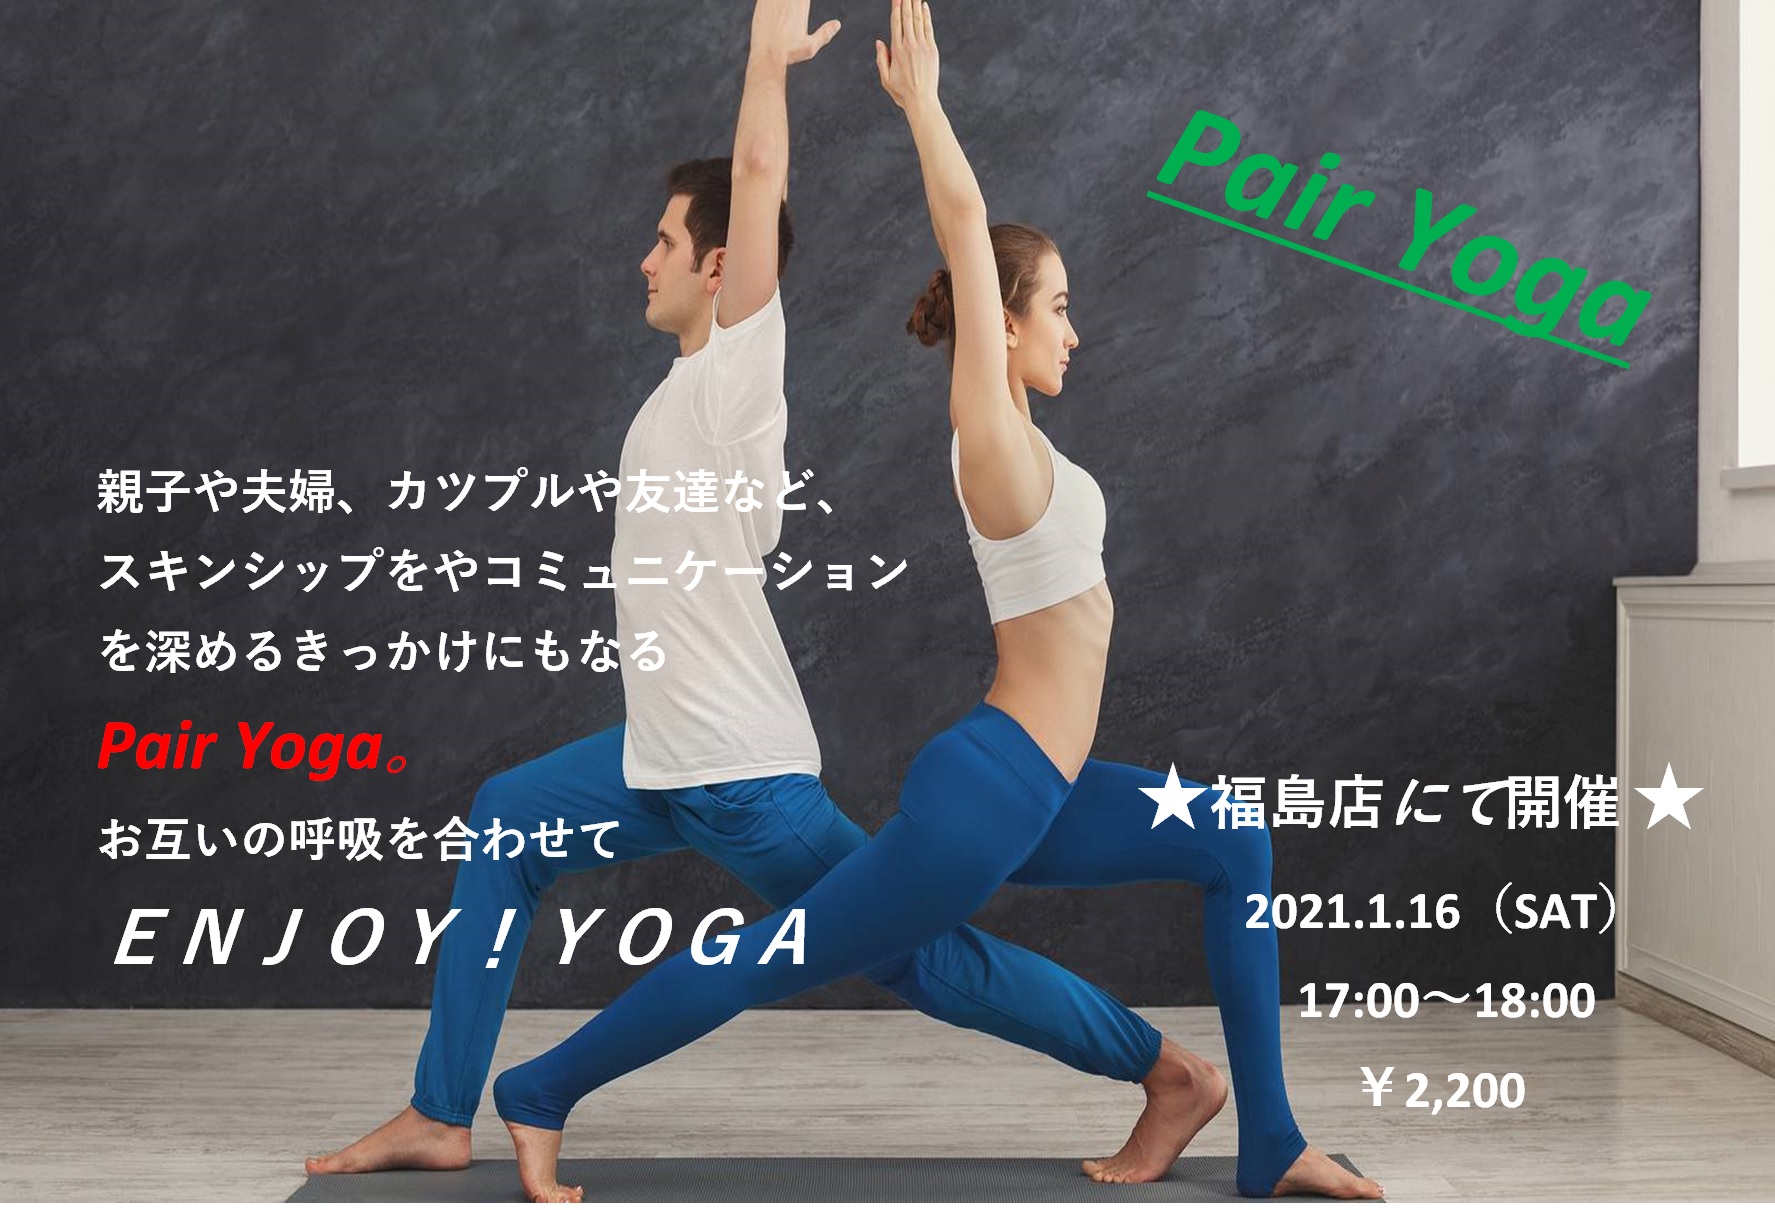 1月メンズヨガ ペアヨガ ホットヨガスタジオビープラス Hot Yoga Studio Be 大阪のホットヨガ体験教室